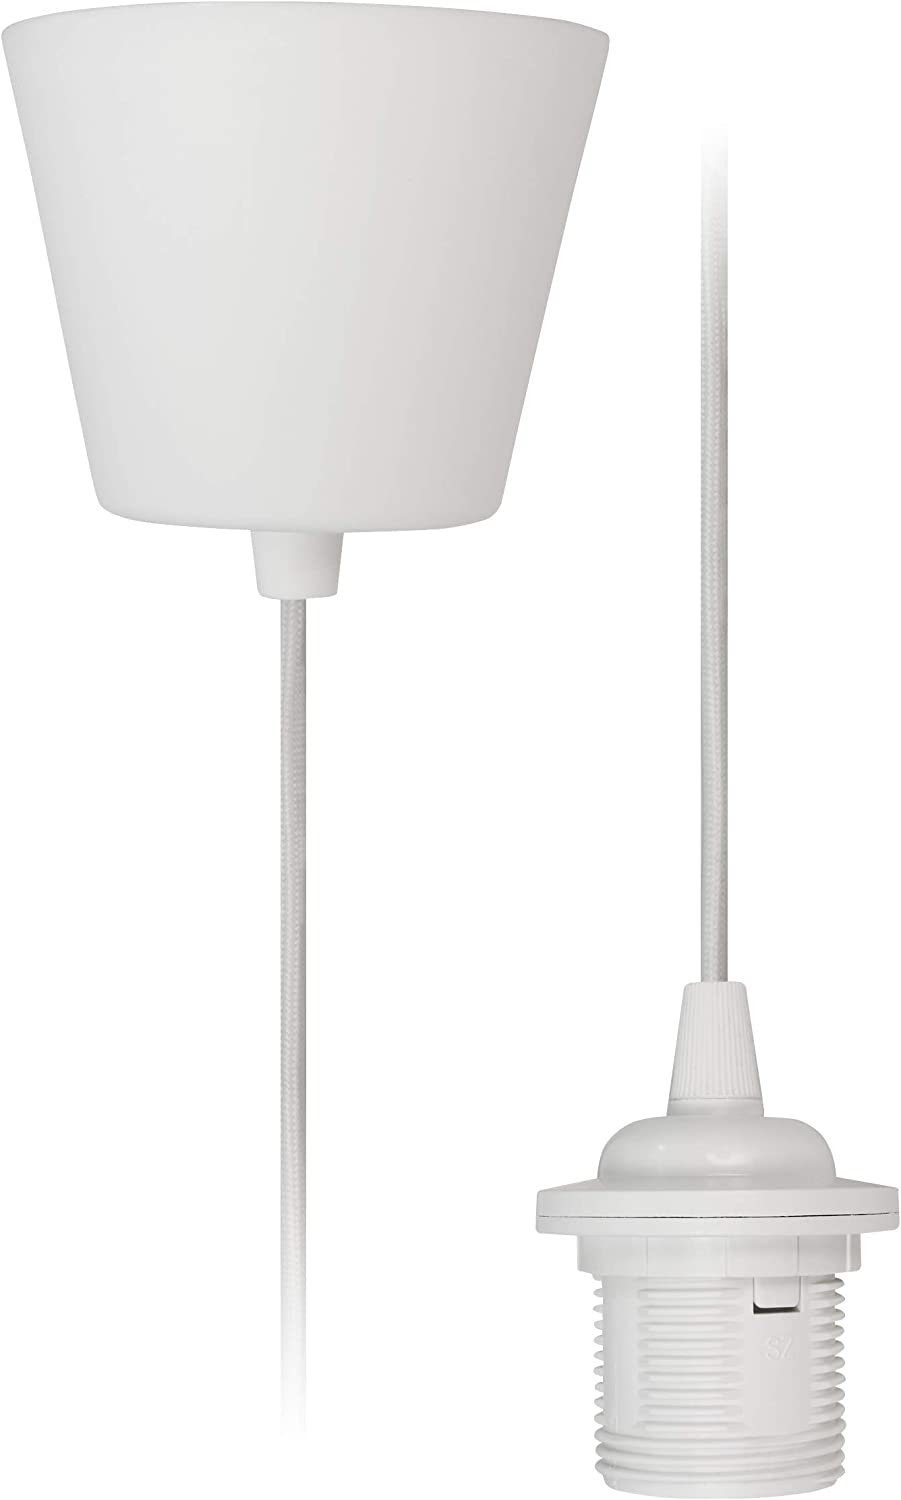 Lampenaufhängung (Textilk weiß, 1,2m McShine McShine, Kabel Lichtschalter Fassung, 230V, E27